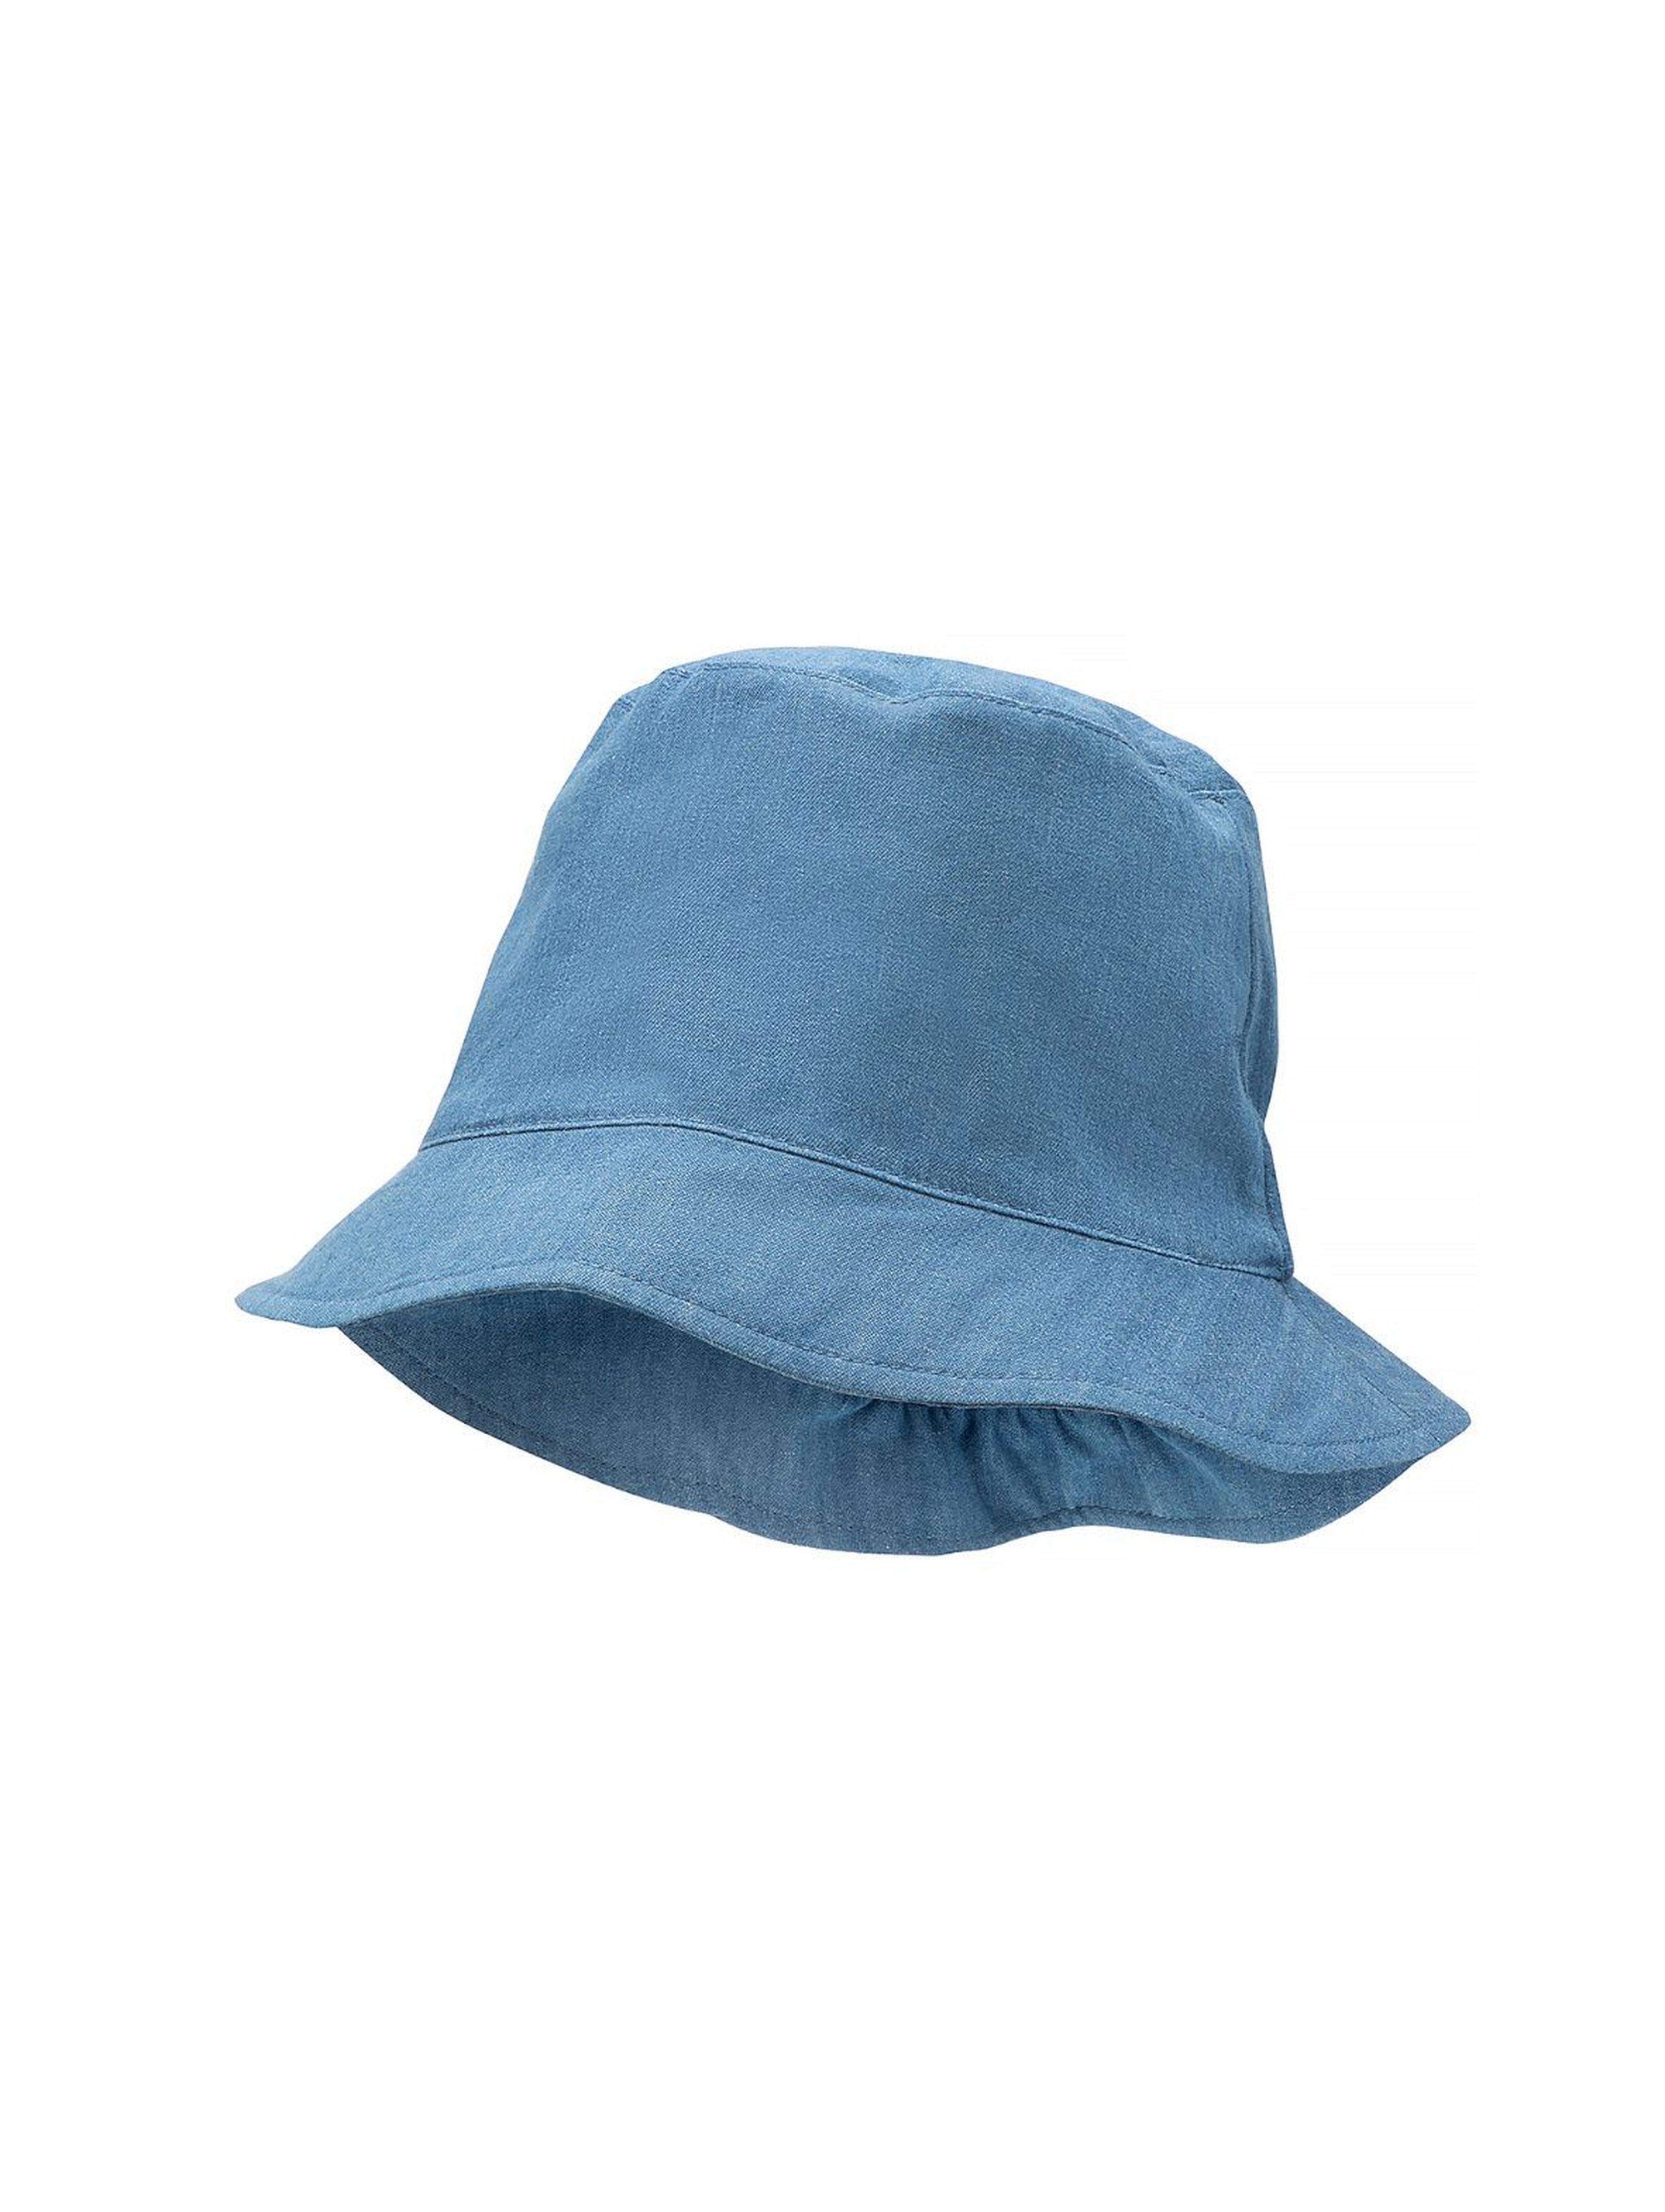 Bawełniany kapelusz na lato niebieski